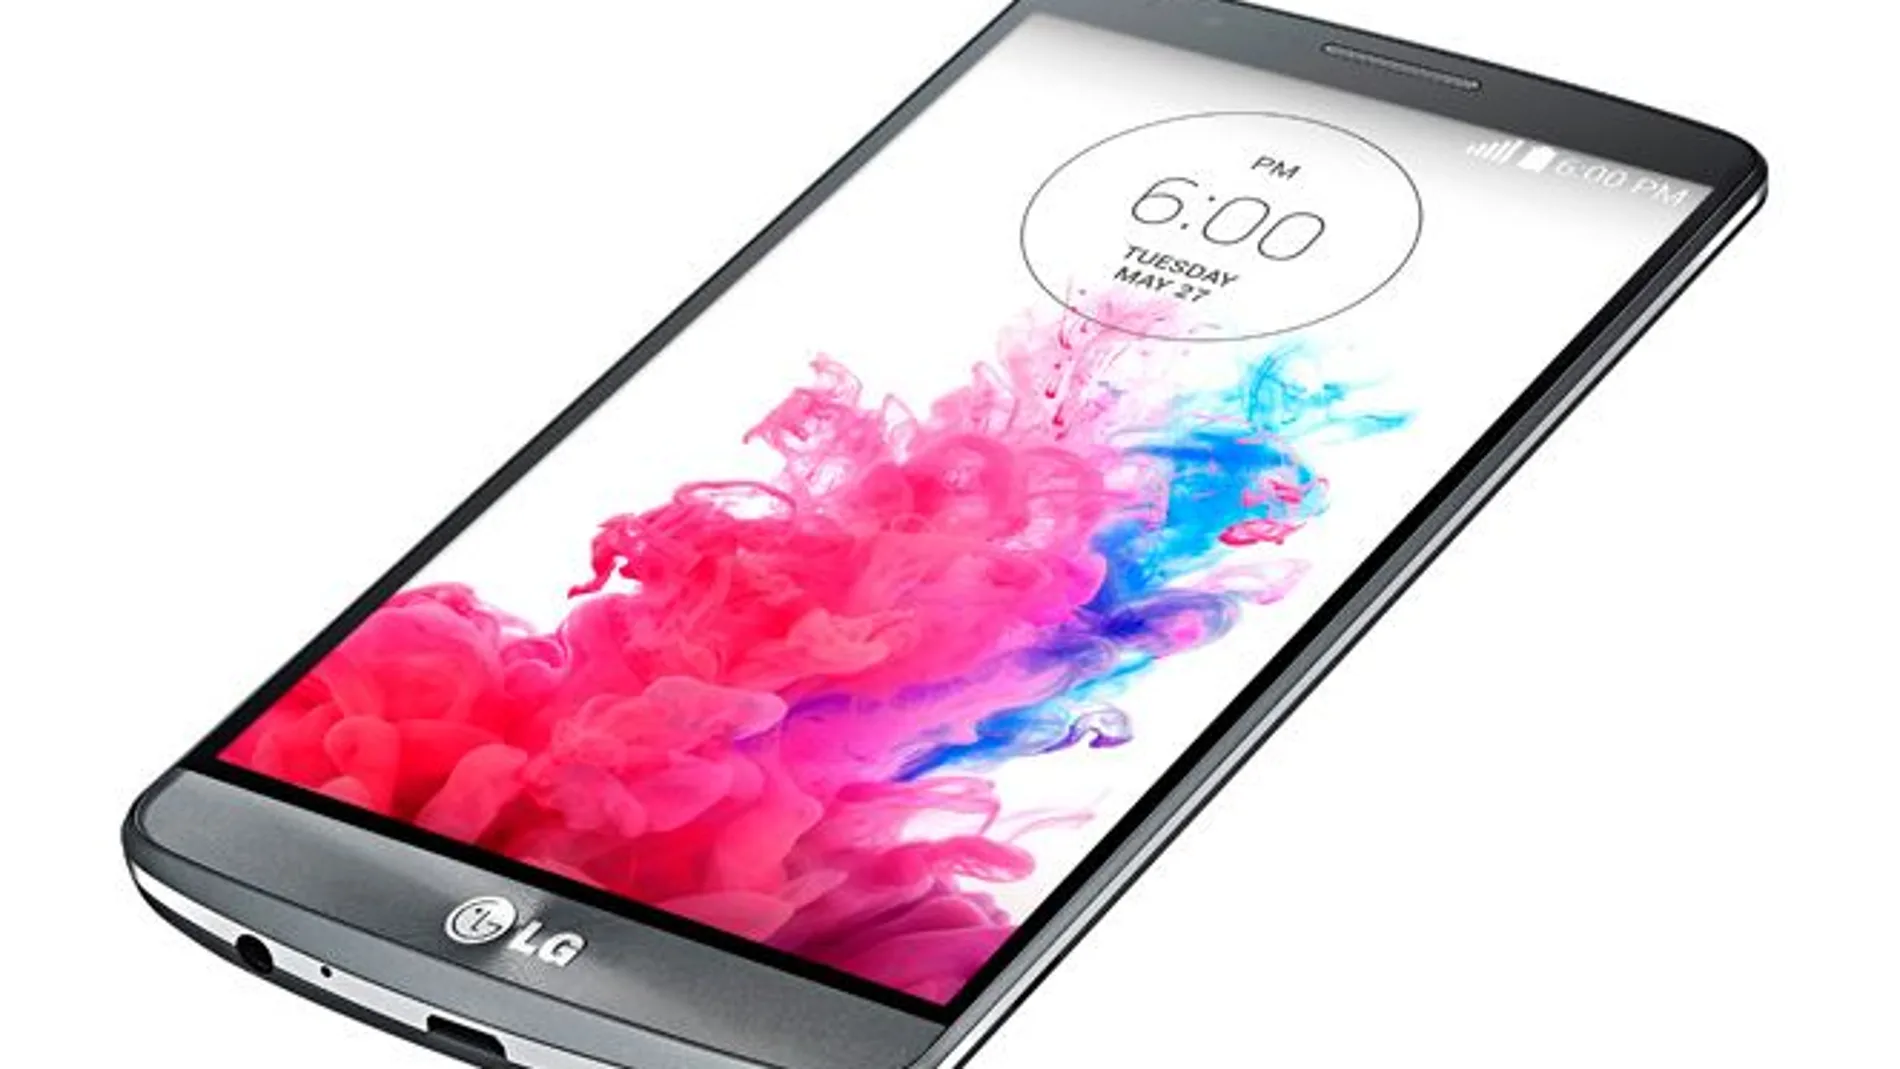 LG lanza el modelo G3 en España el 1 de julio